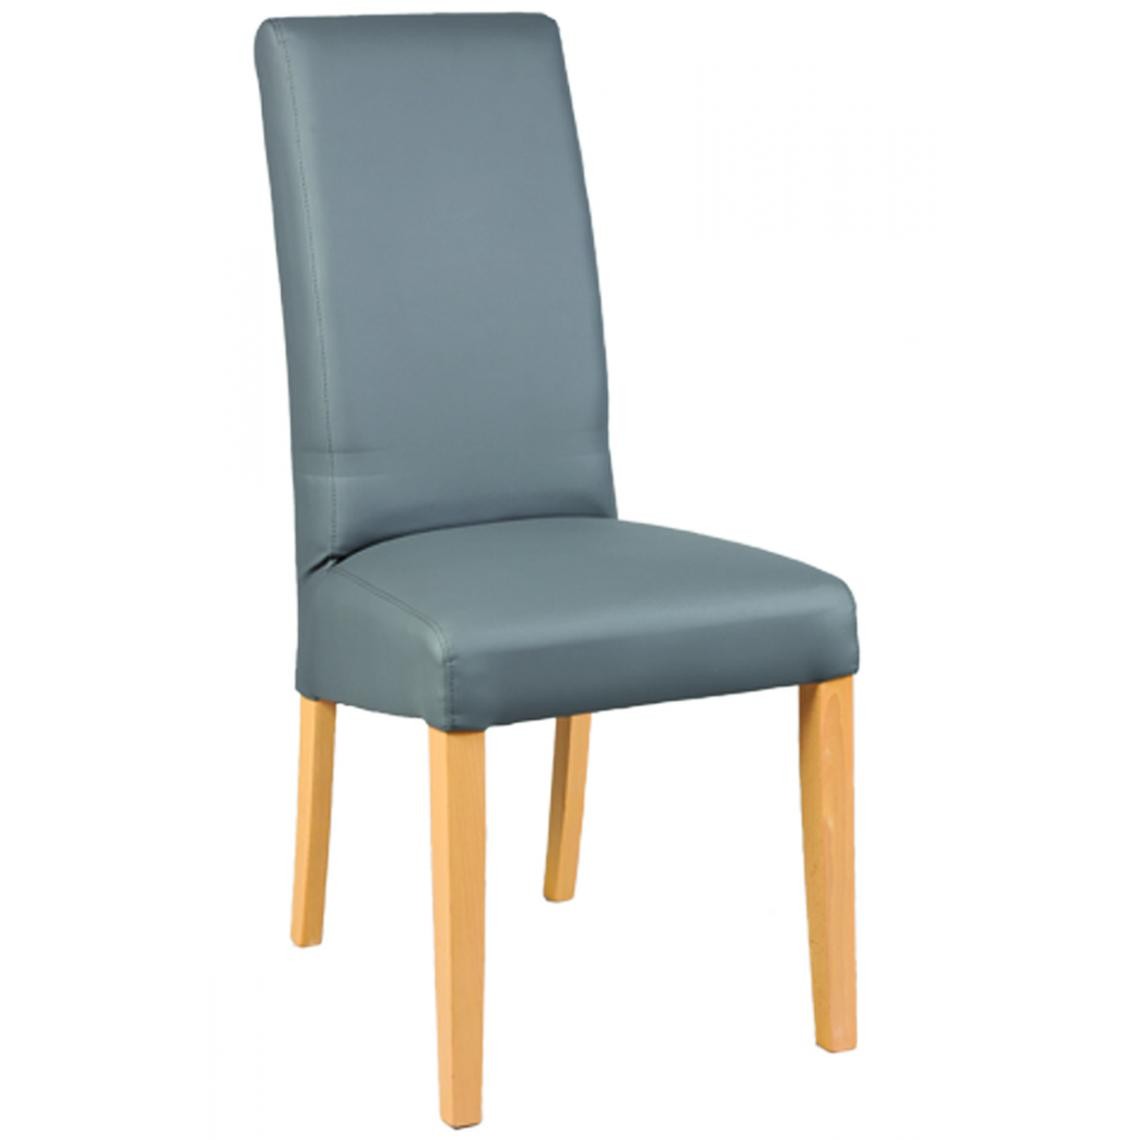 Pegane - Lot de 2 chaises en hêtre et Polyuréthane coloris gris - Dim : L 47 x P 52 x Ht 97 x Ht Ass 48 cm - Chaises